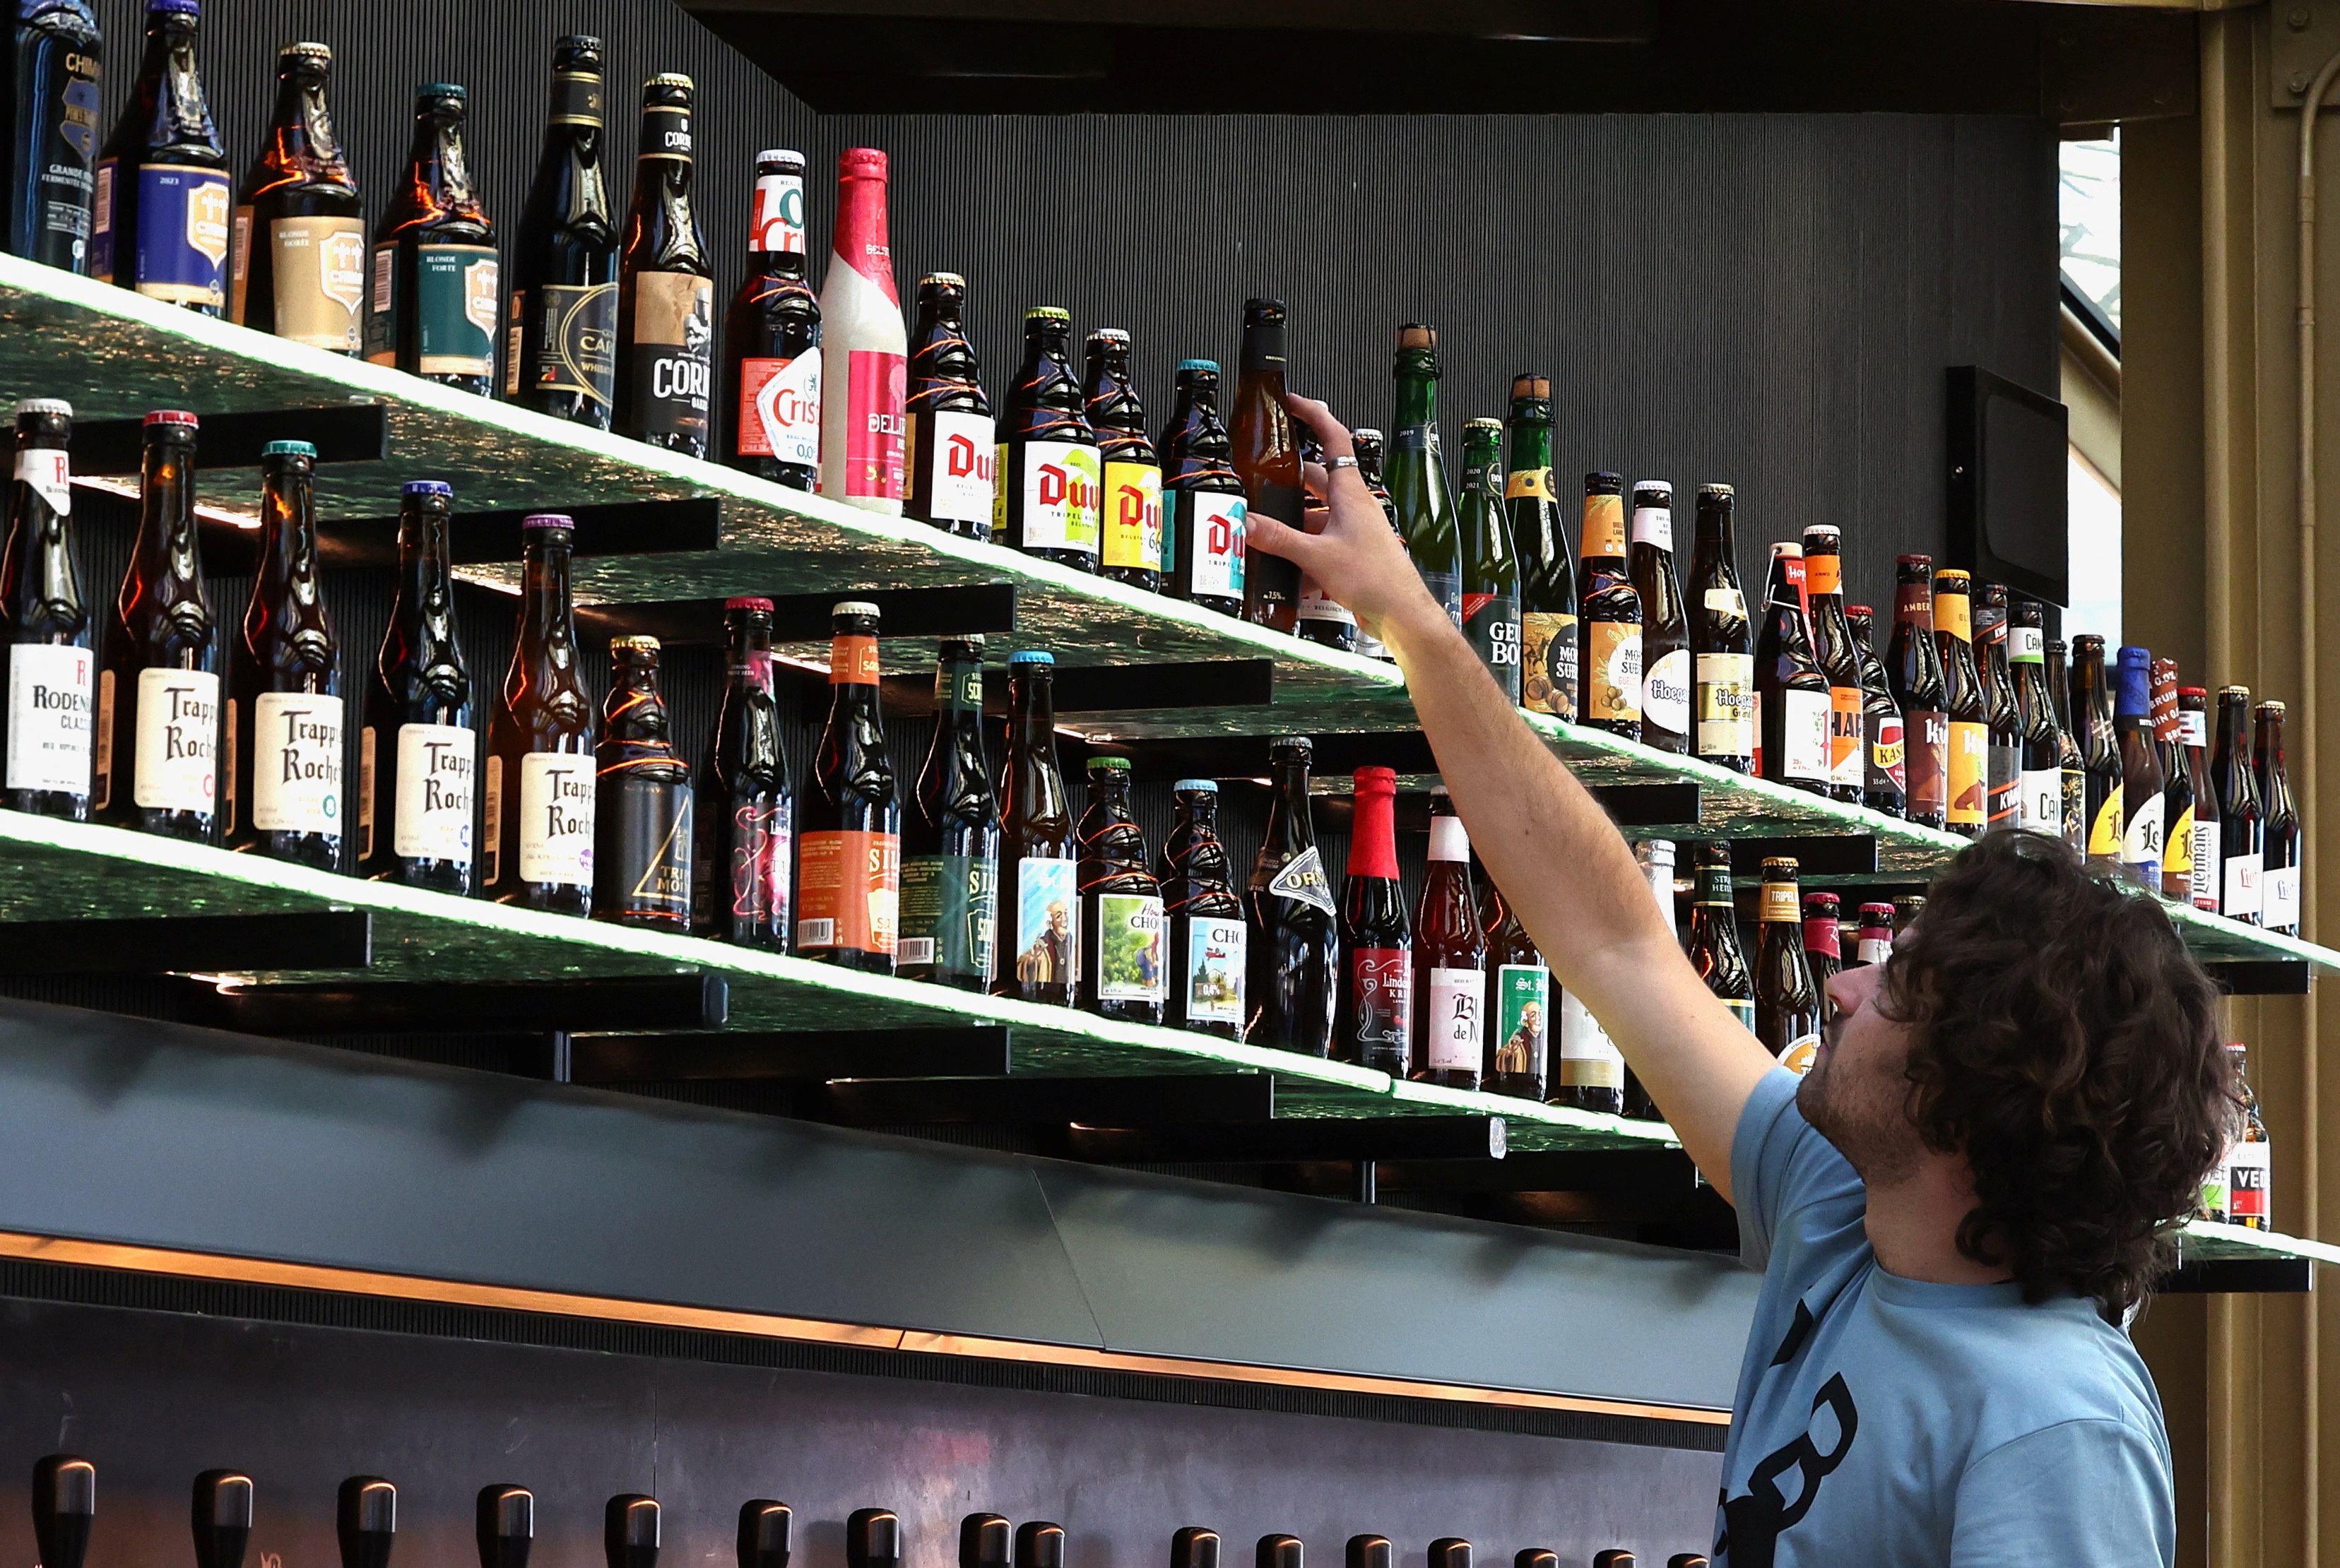 Belgian Beer World opens in Brussels